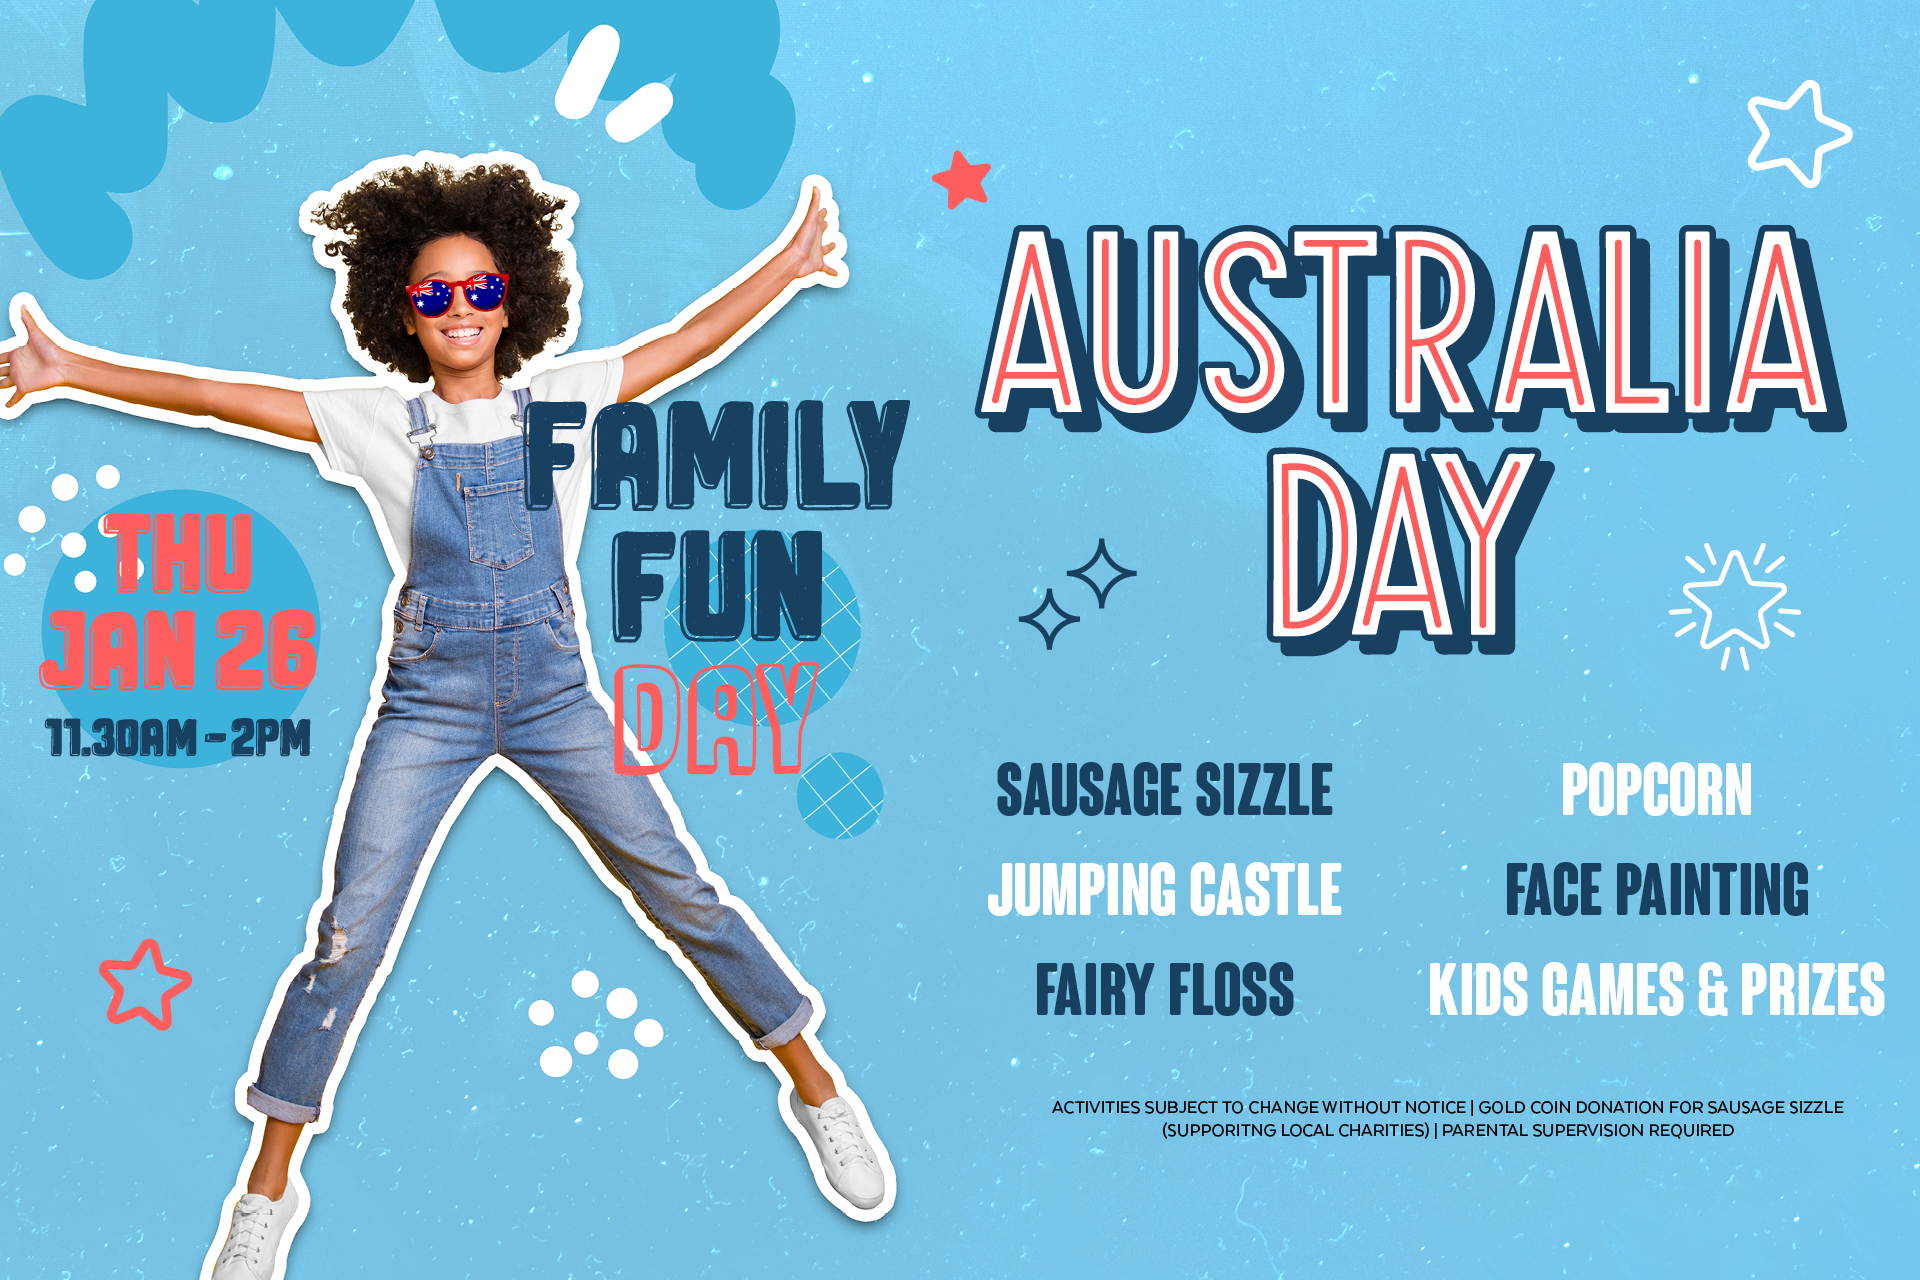 Australia Day Family Fun